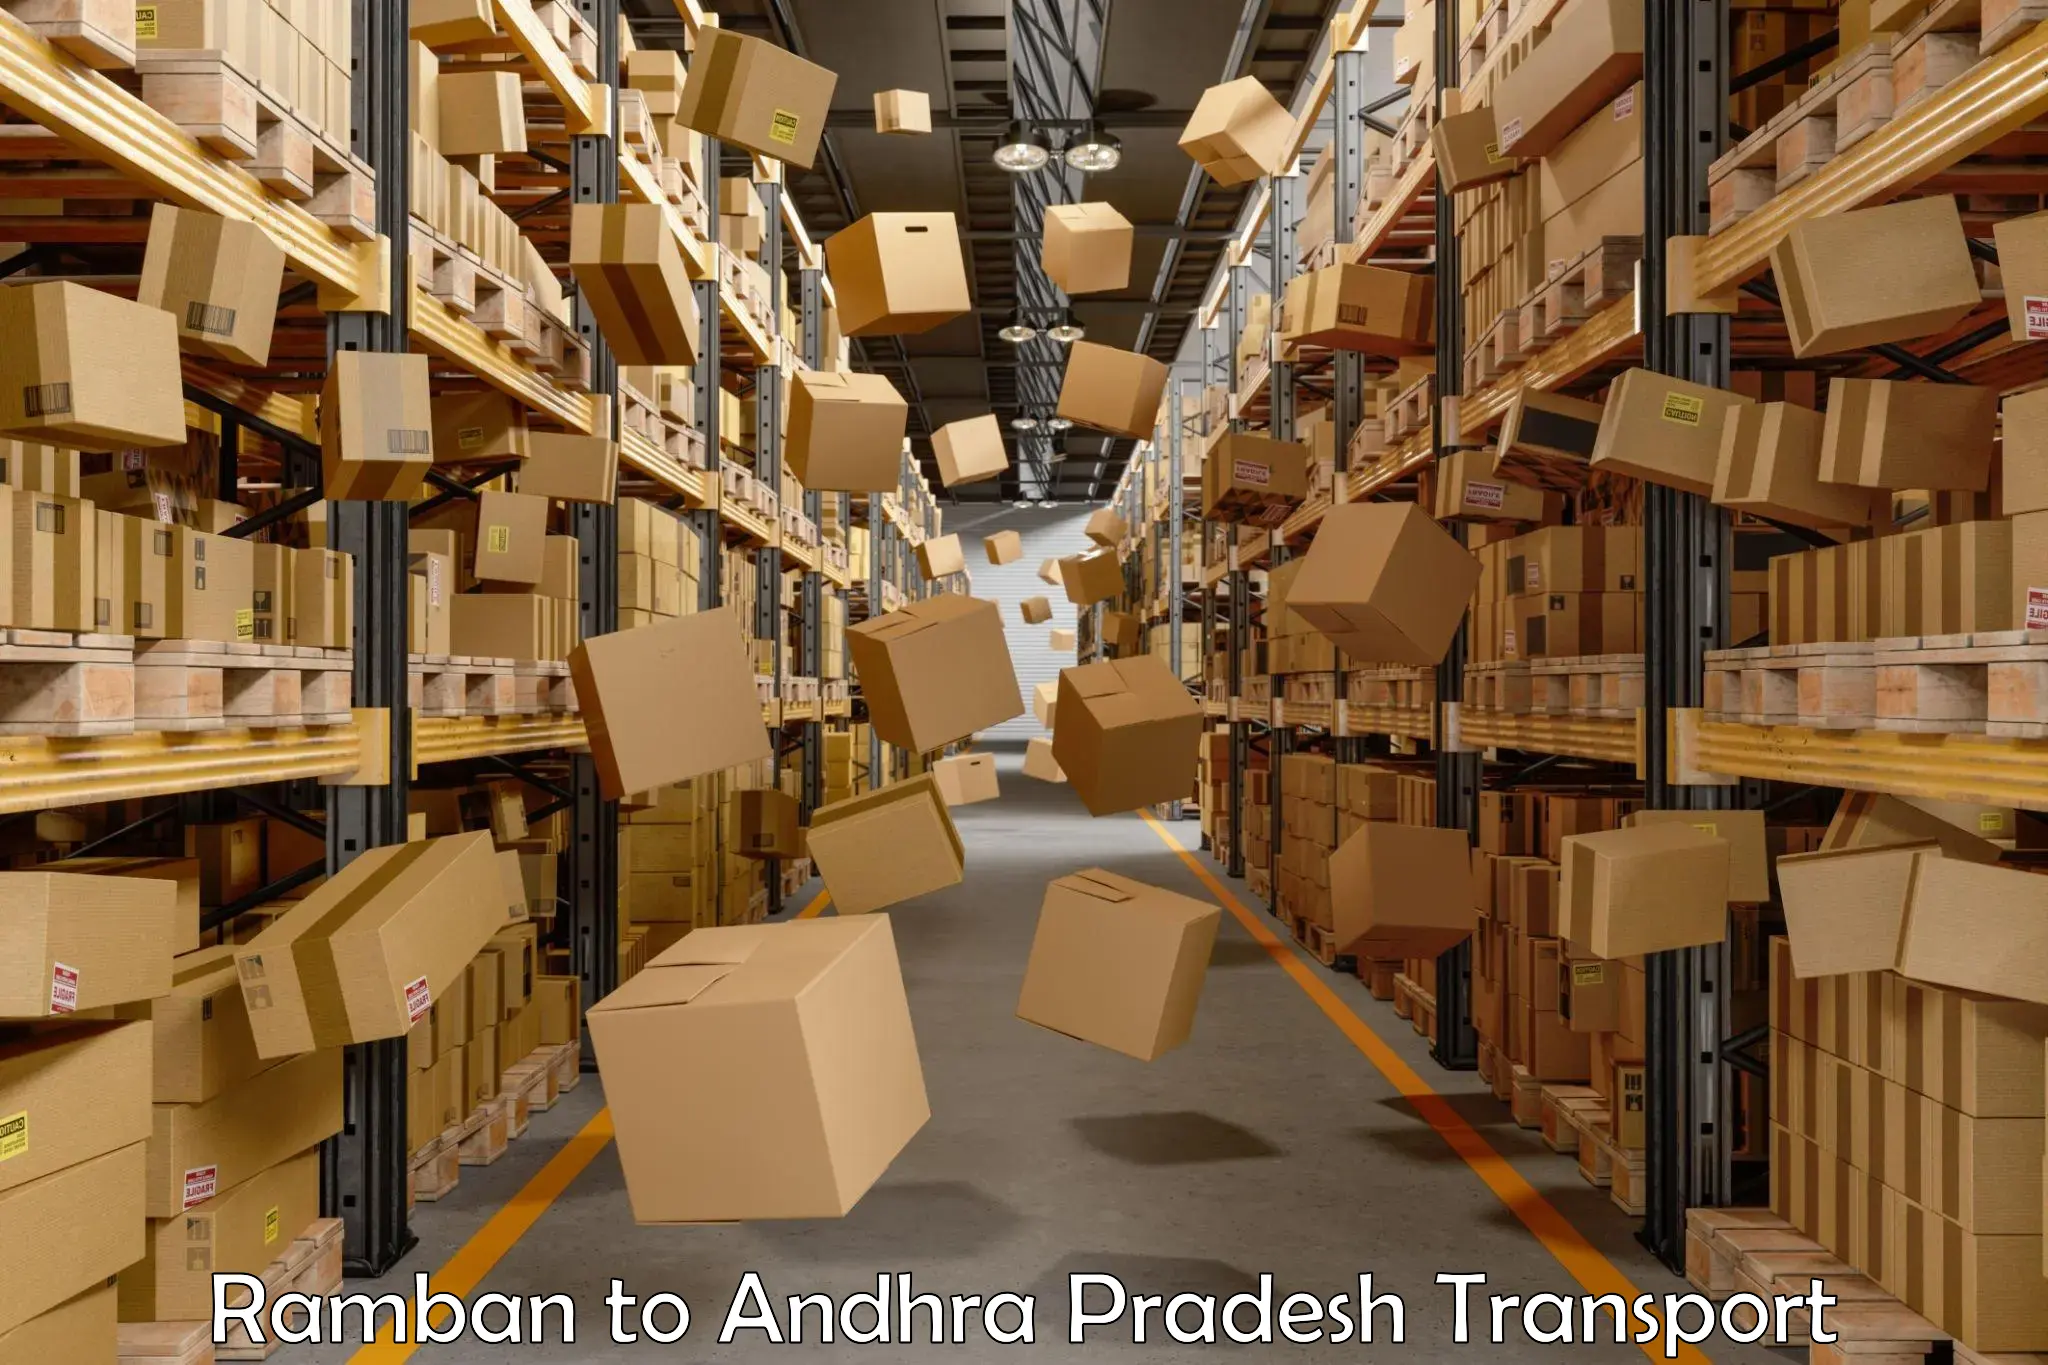 Furniture transport service Ramban to Andhra Pradesh